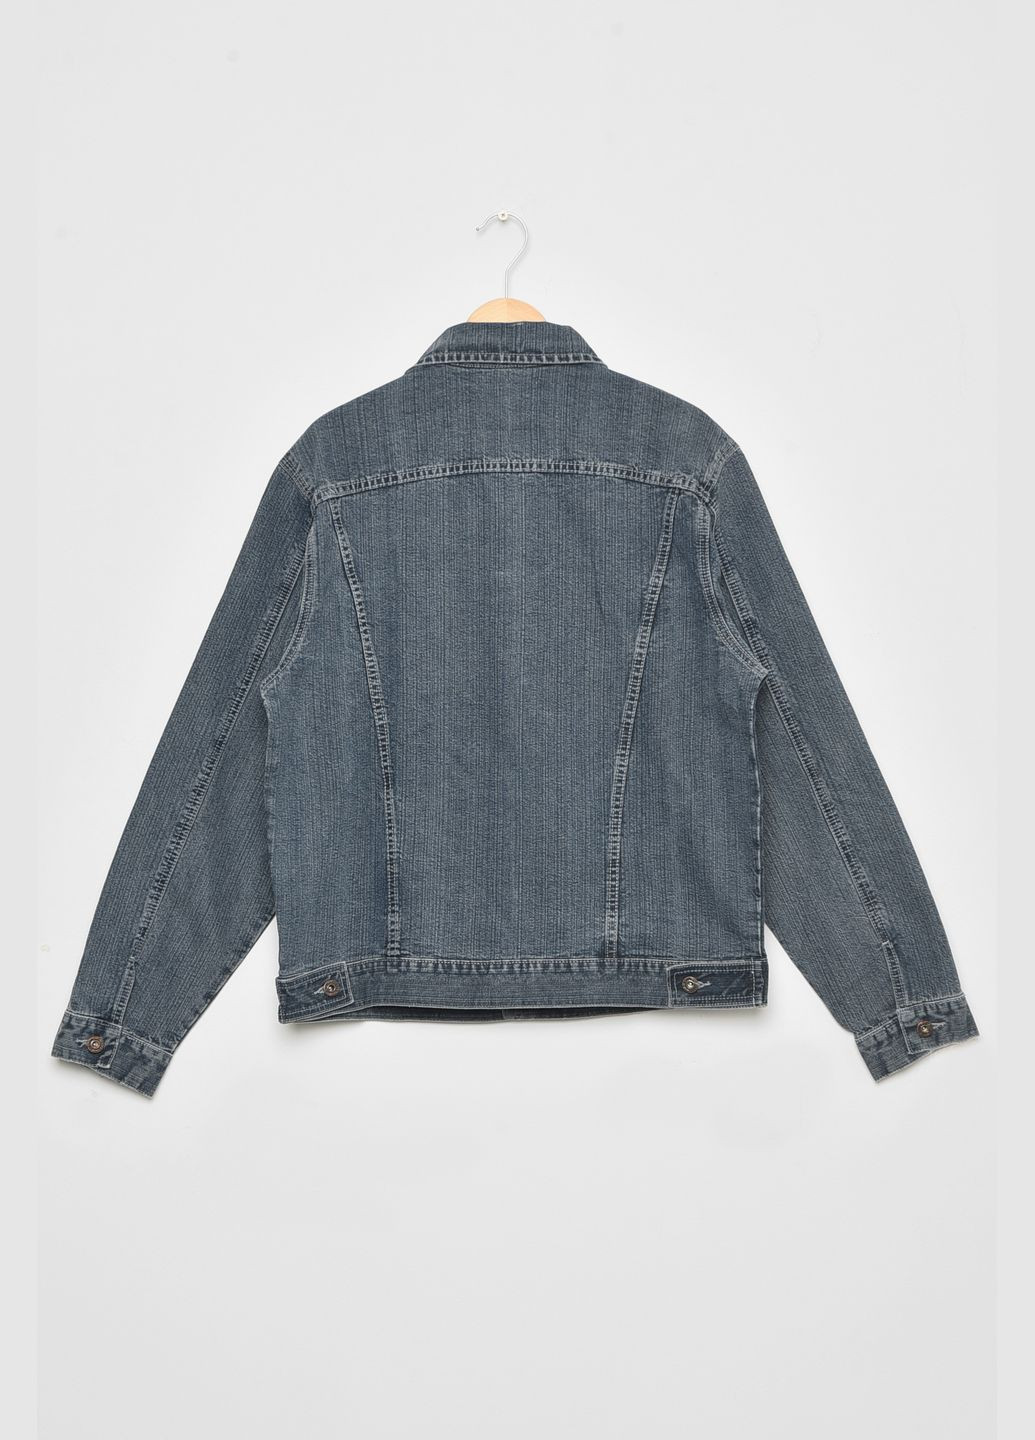 Пиджак мужской батальный джинсовый светло-серого цвета Let's Shop (292548785)